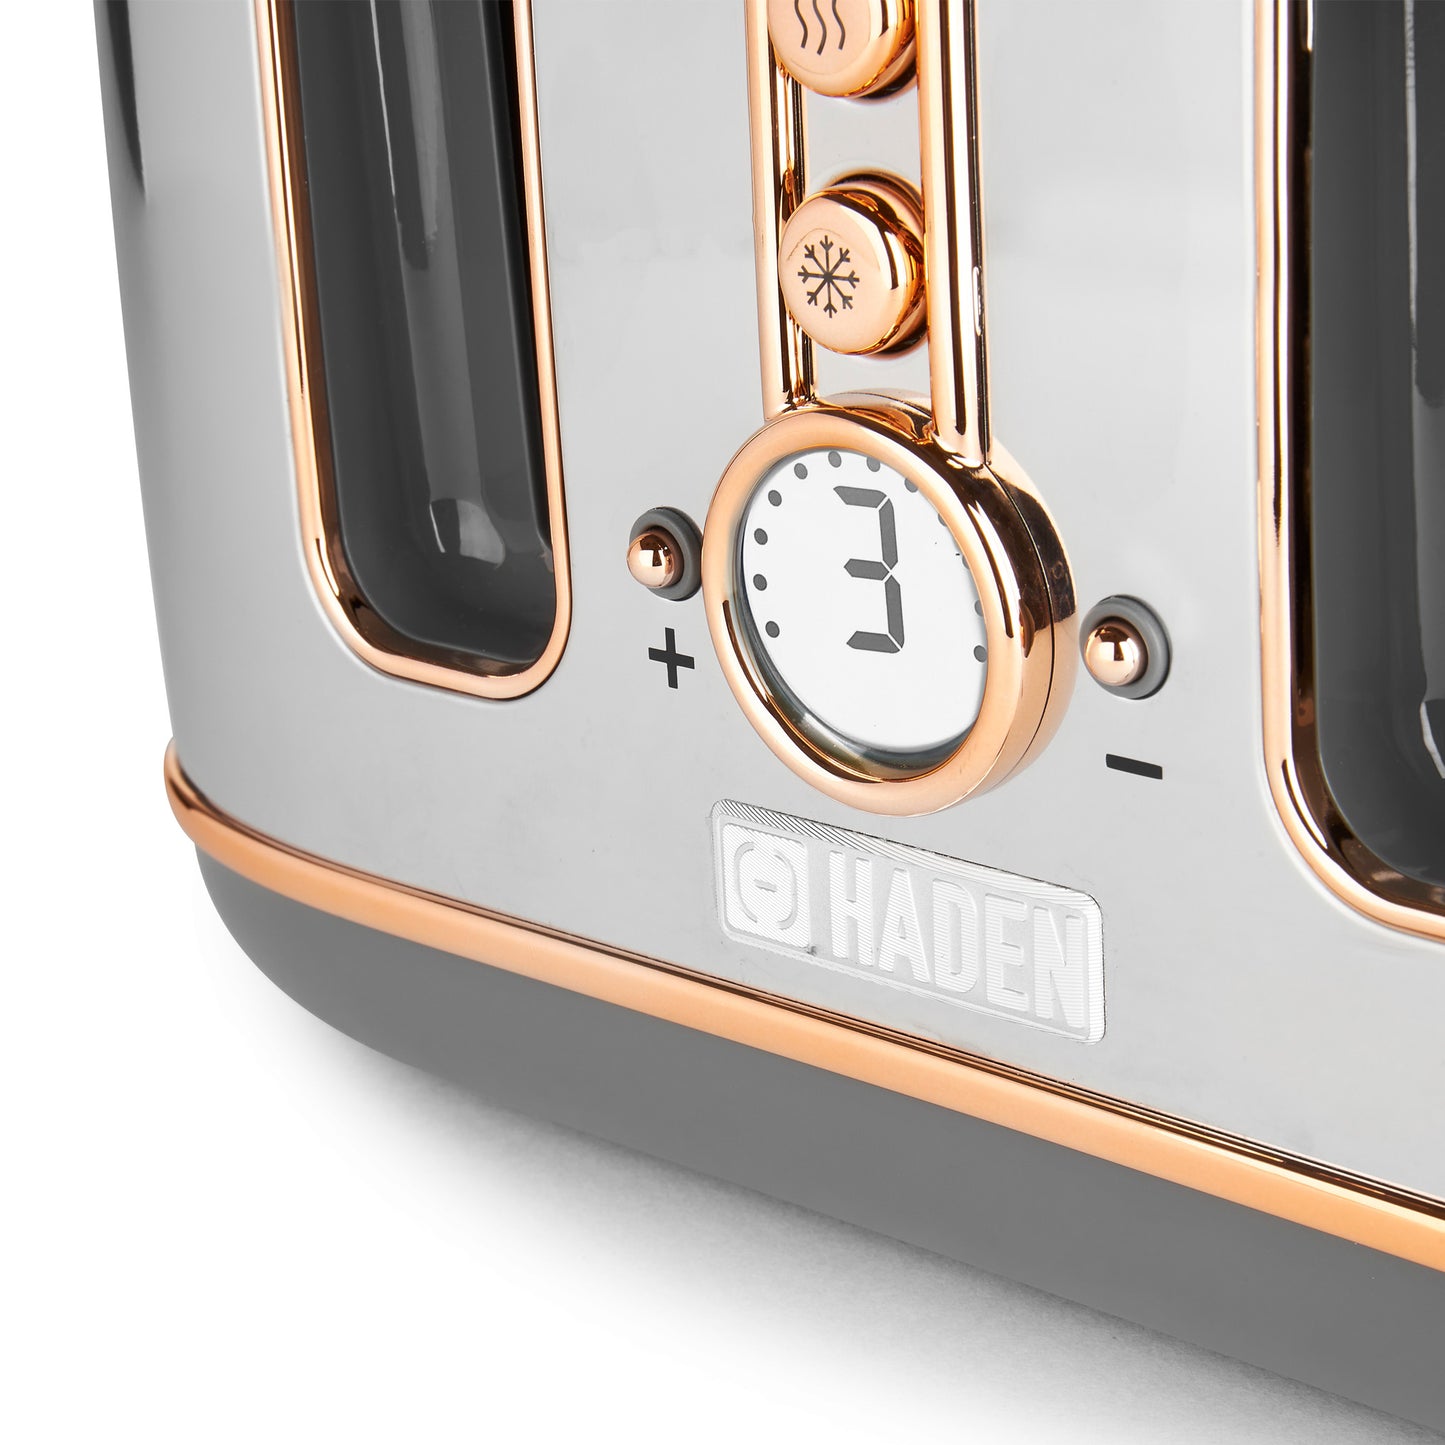 Haden Dorchester Bundle Kettle + Toaster - Chrome & Rose Gold